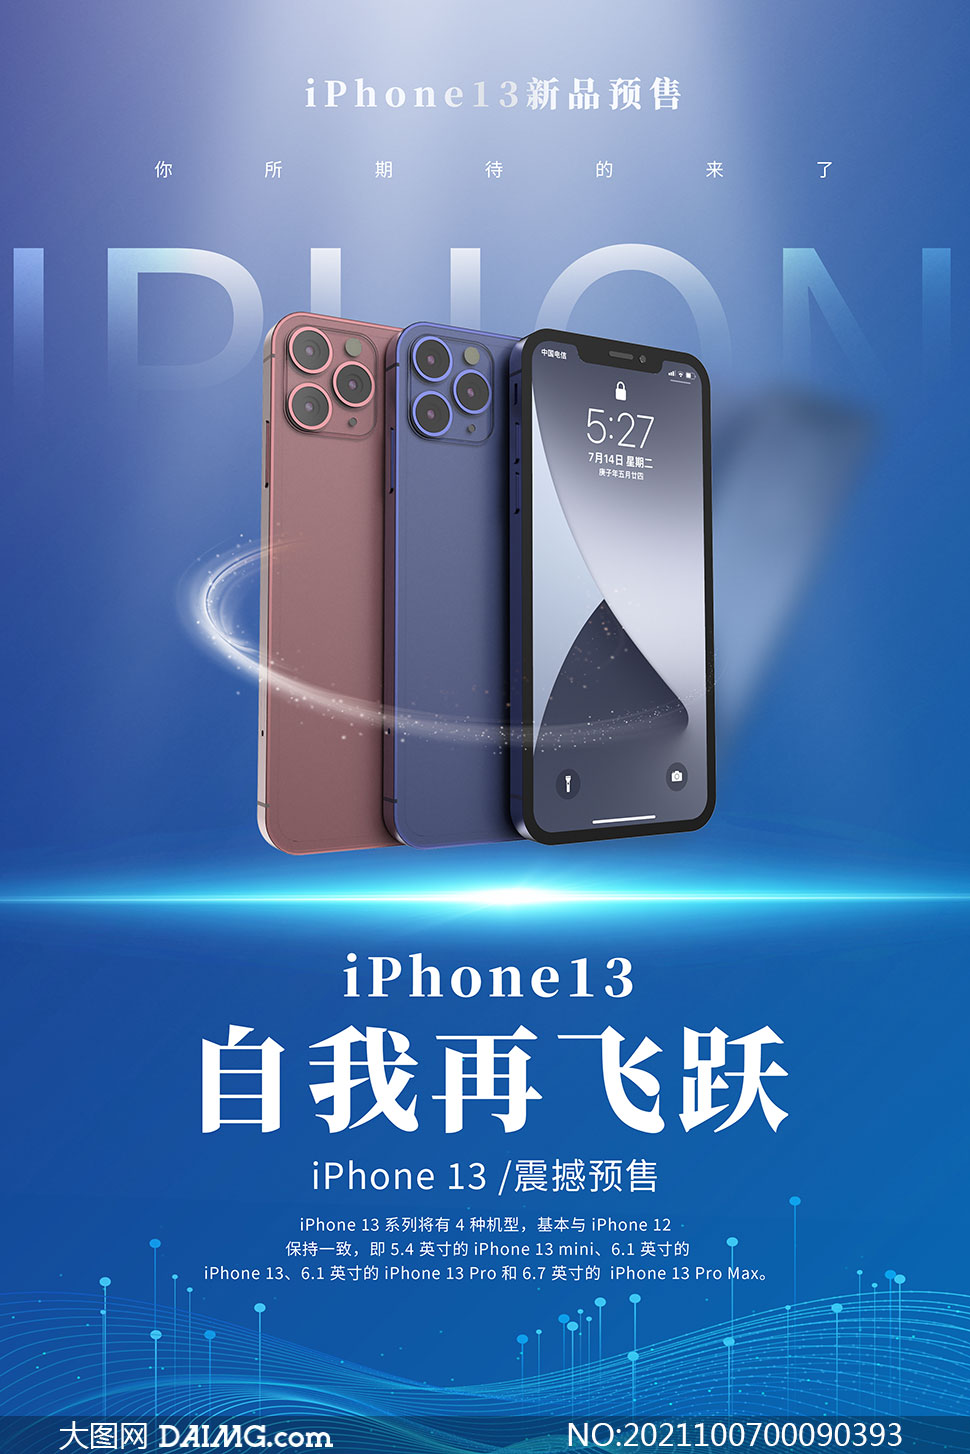 iphone13全系手机预售海报设计psd素材